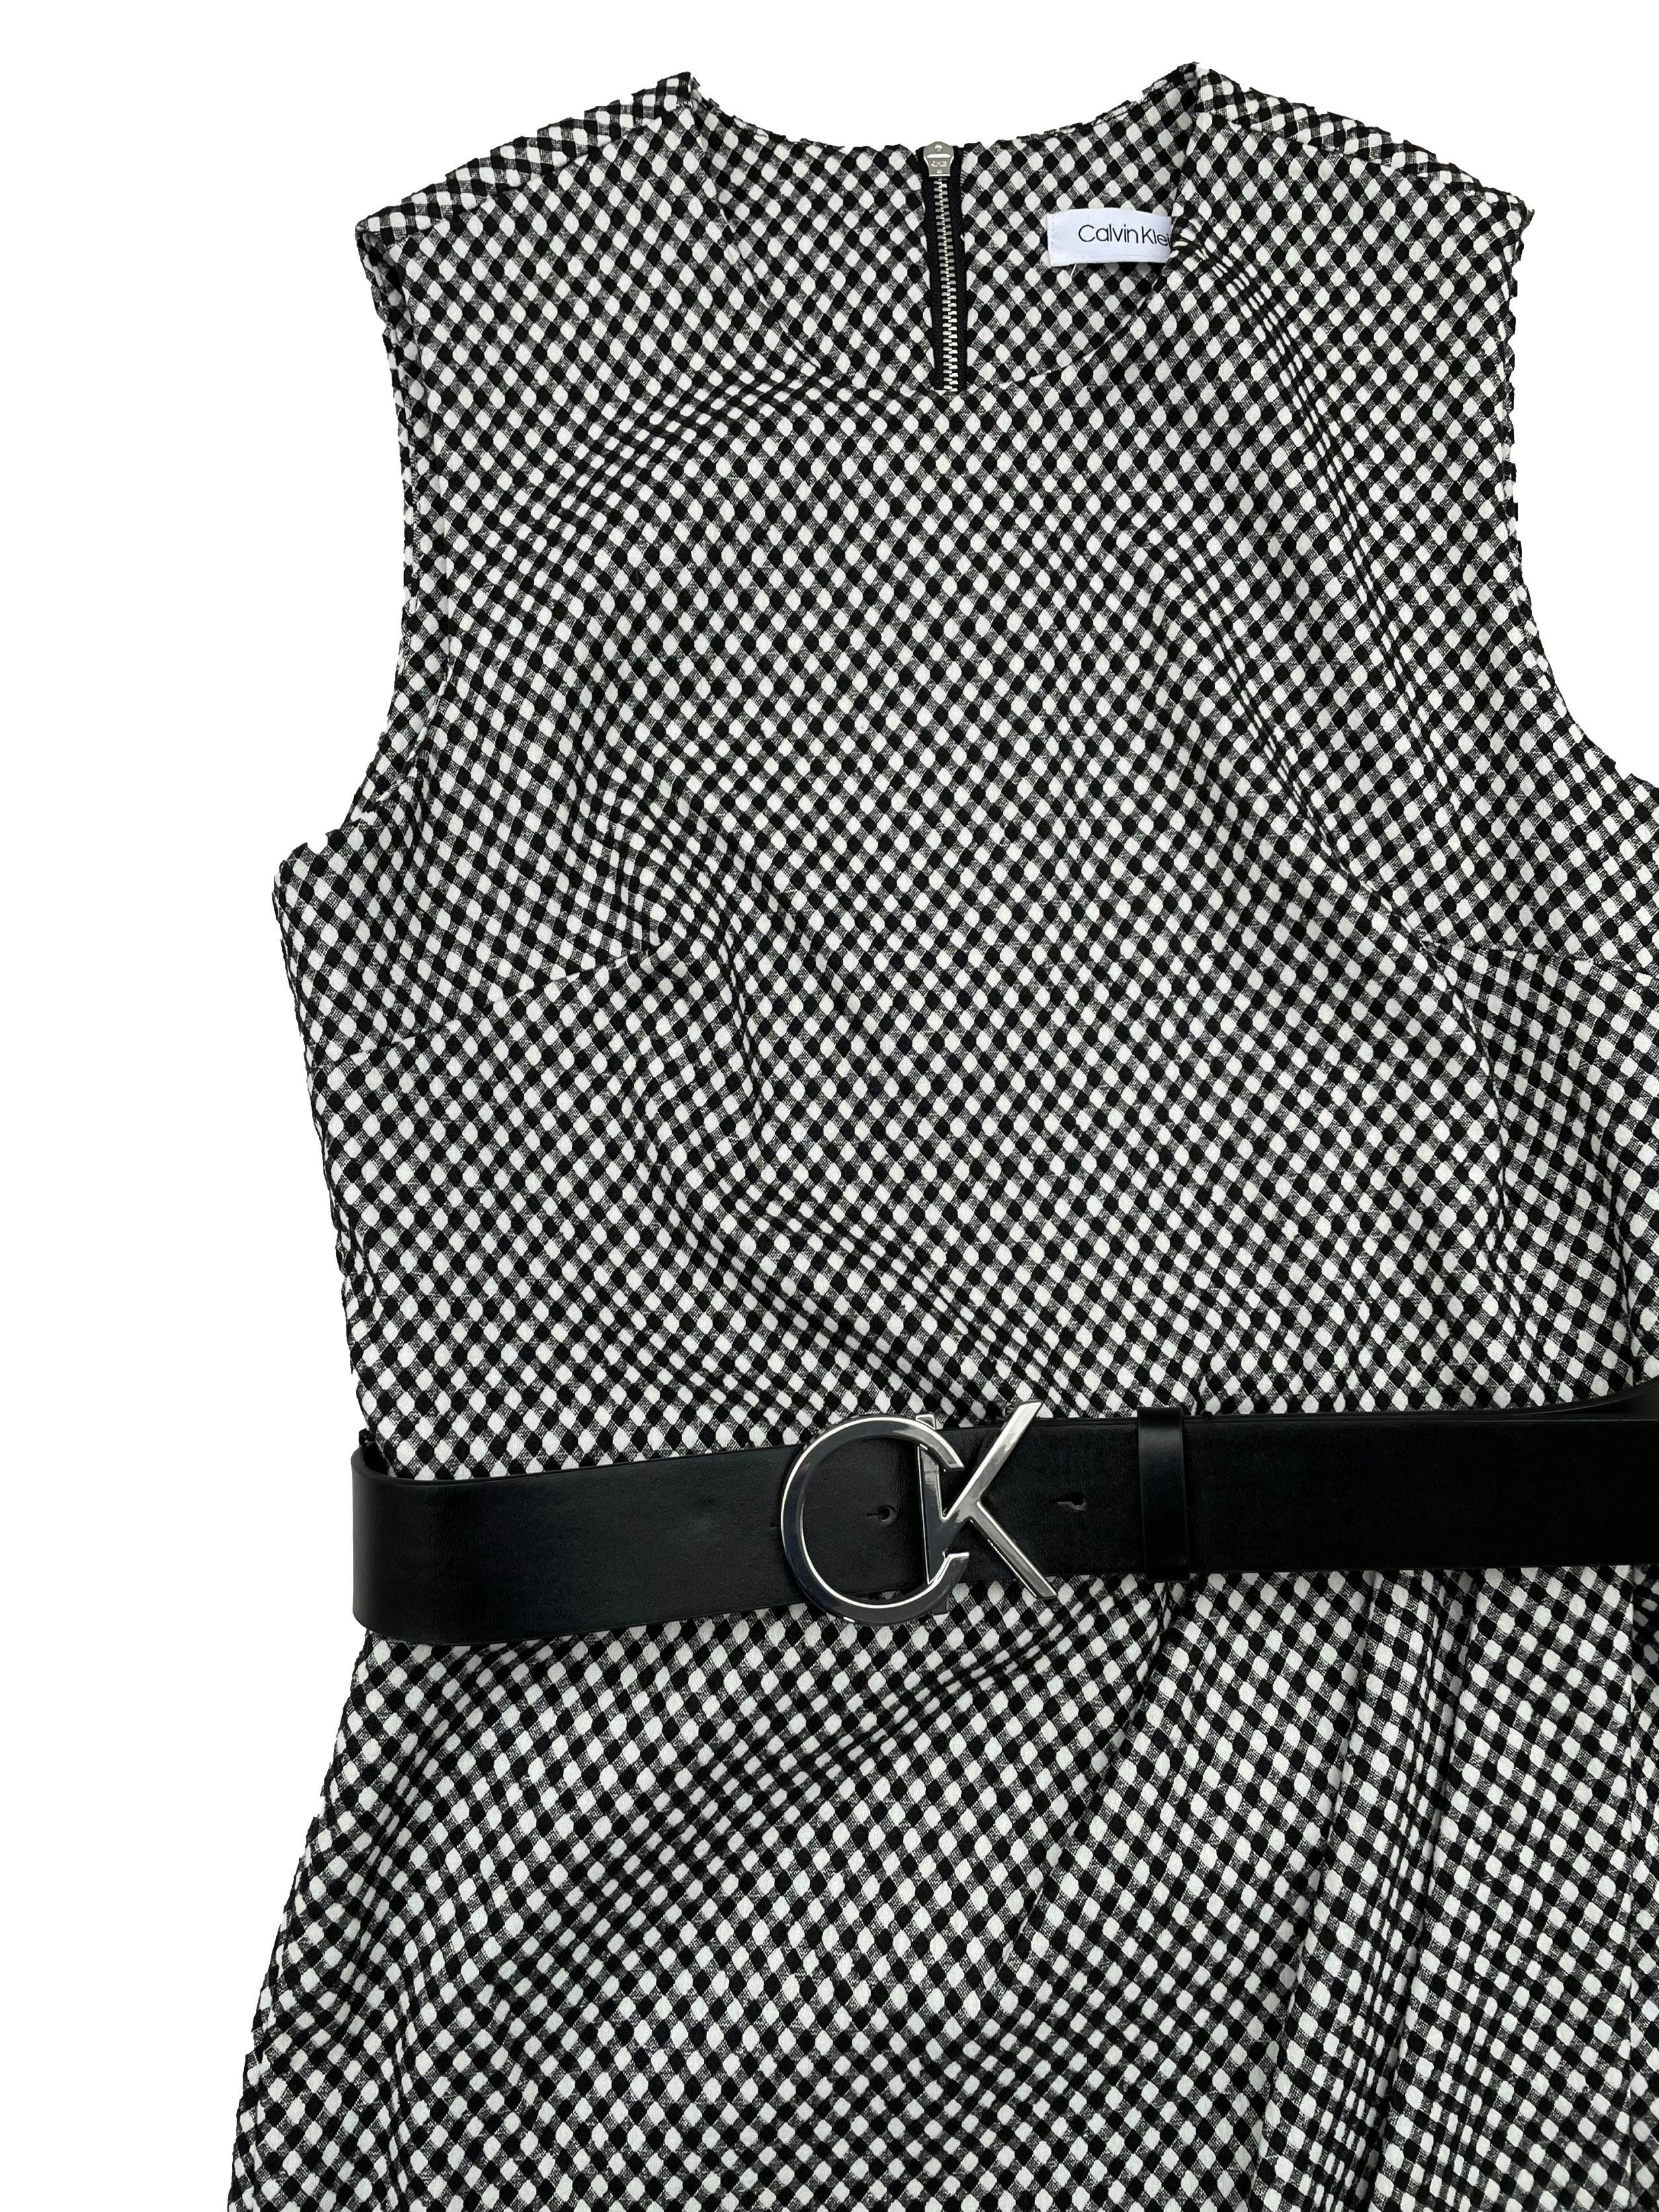 Vestido Calvin Klein a cuadros vichy en blanco y negro en tela stretch, corte en cintura con pliegues y cruce en falda, cierre metálico posterior, viene con correa negra talla 6. Busto 86cm sin estirar, Largo 106cm.